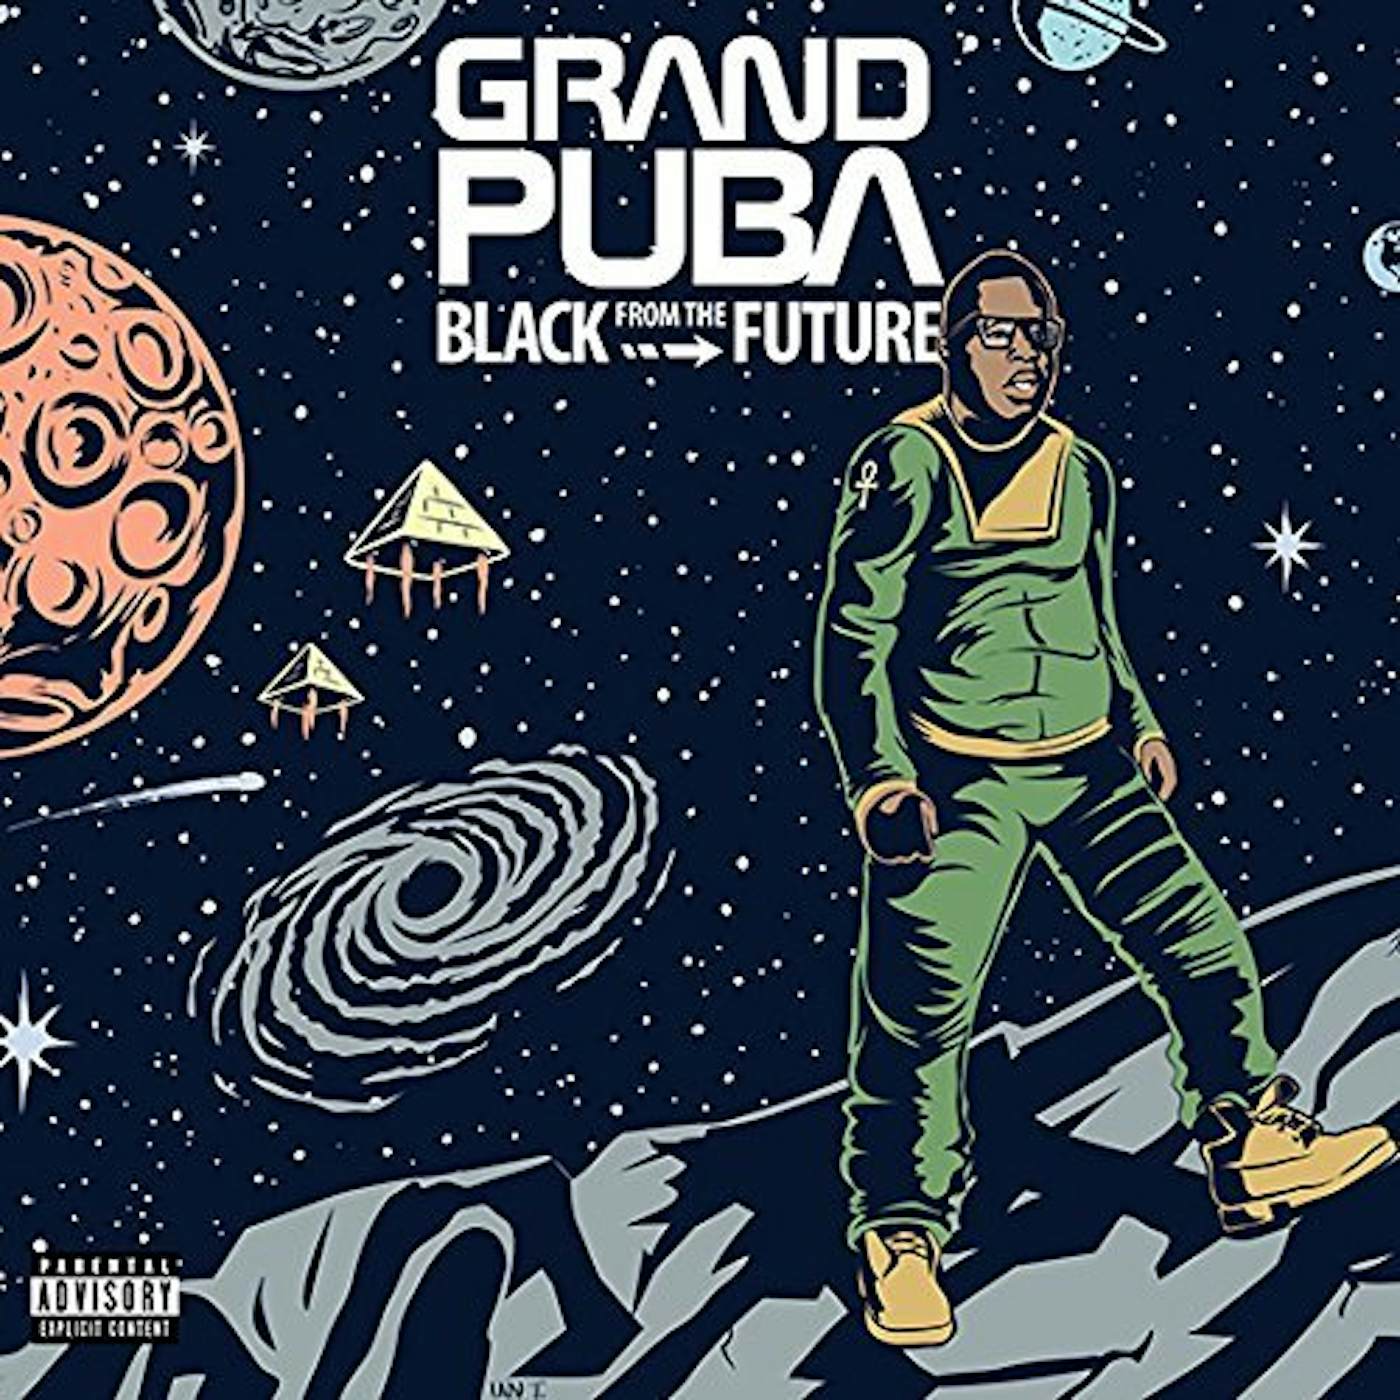 Grand Puba BLACK FROM THE FUTURE CD